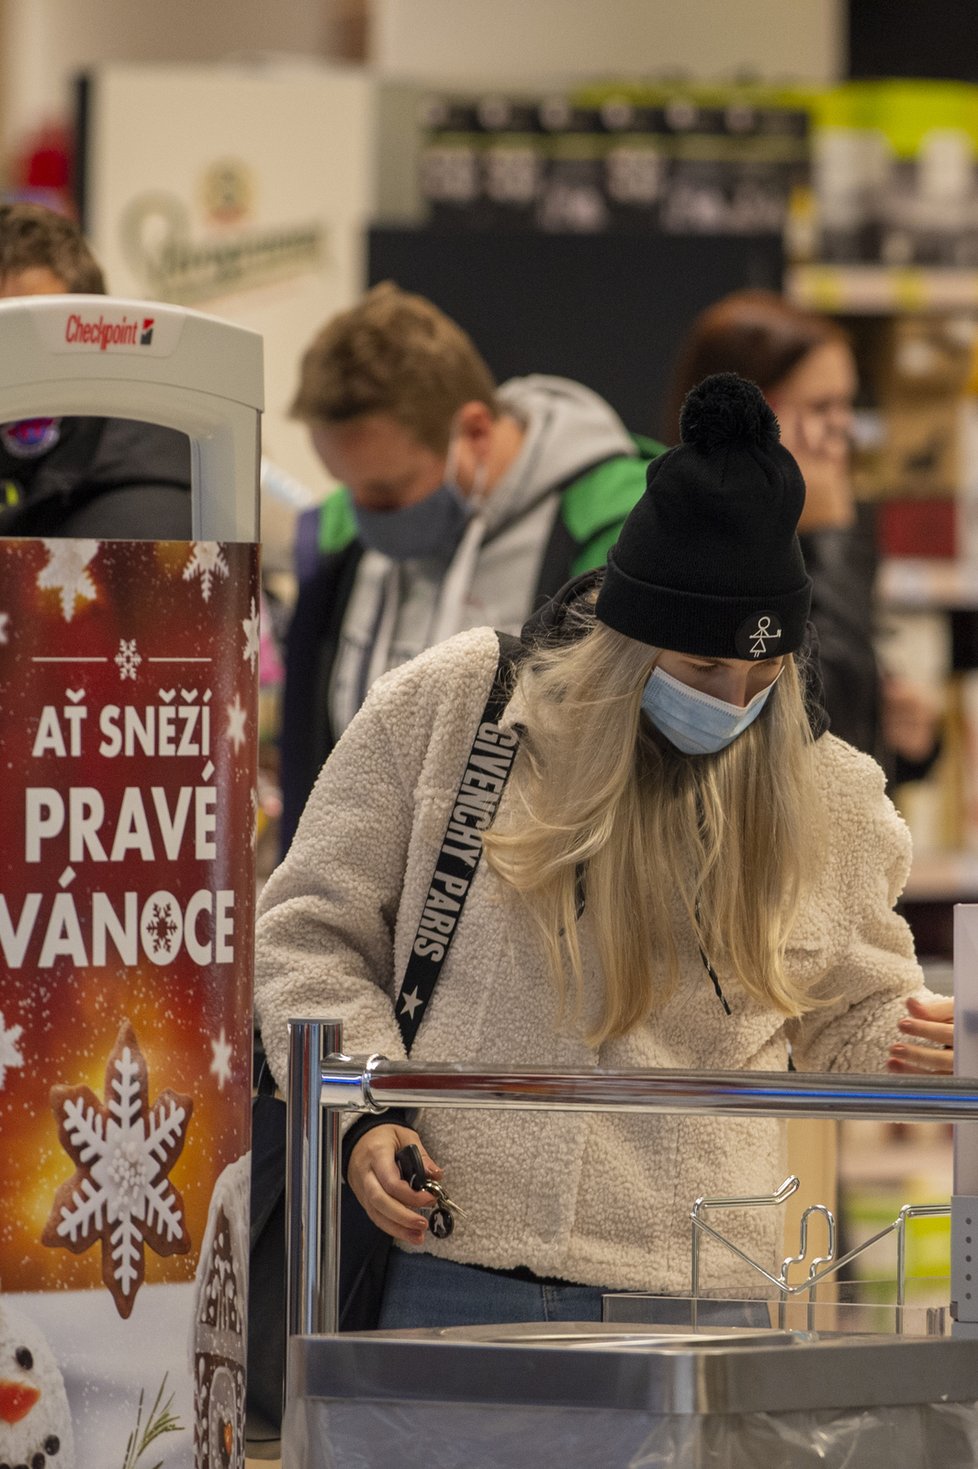 Češi využili toho, že supermarket v Českých Budějovicích může být otevřený: Fronty u pokladen a narváno (8.11.2020)